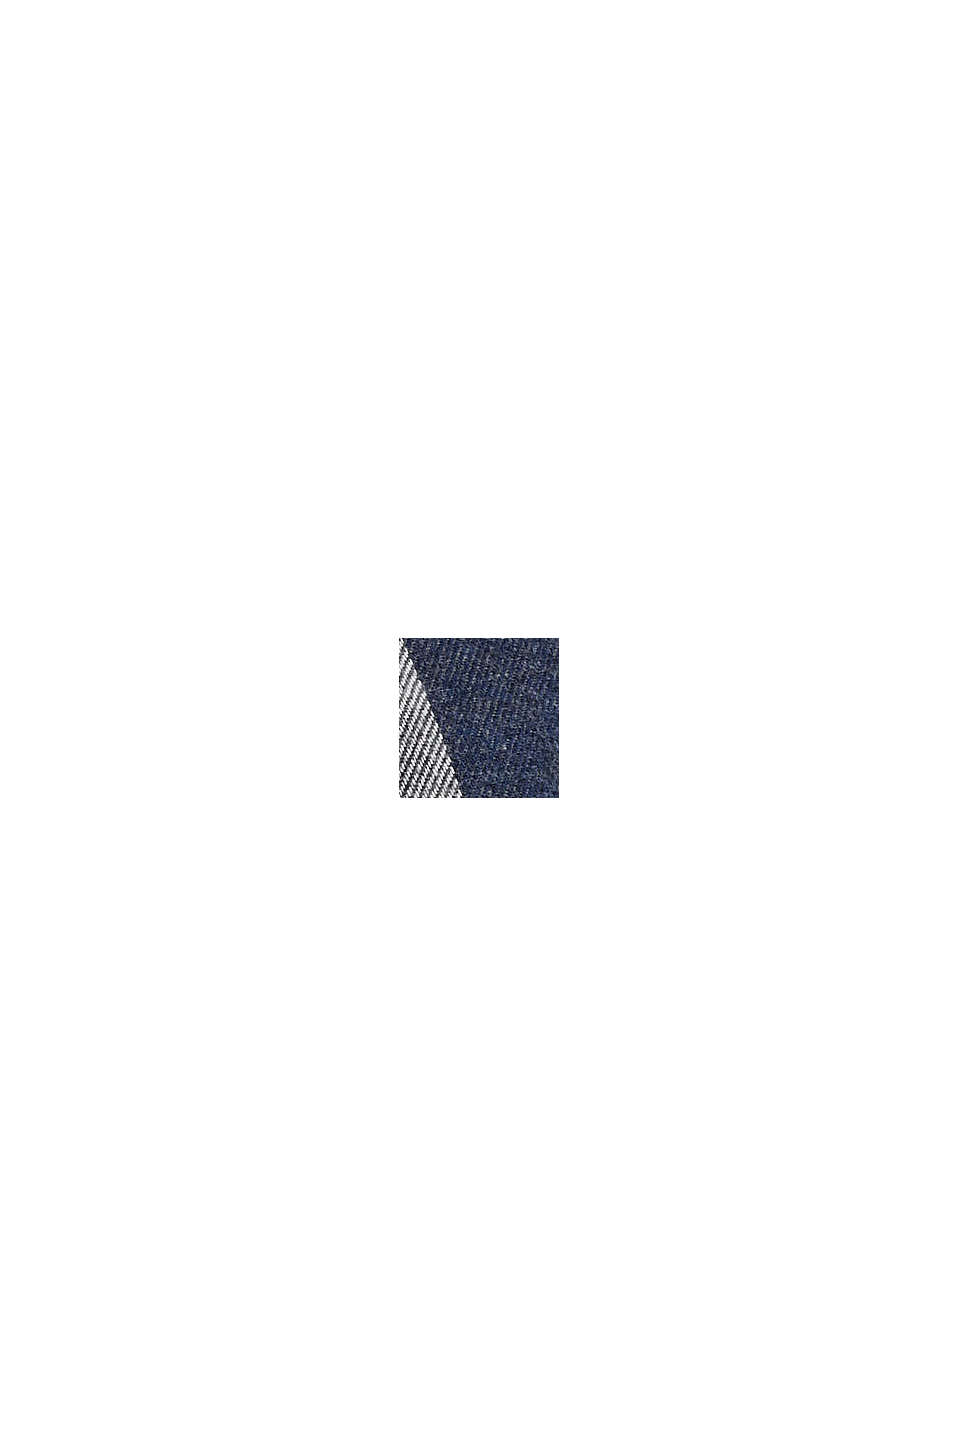 Chemise en flanelle de coton à carreaux, DARK BLUE, swatch